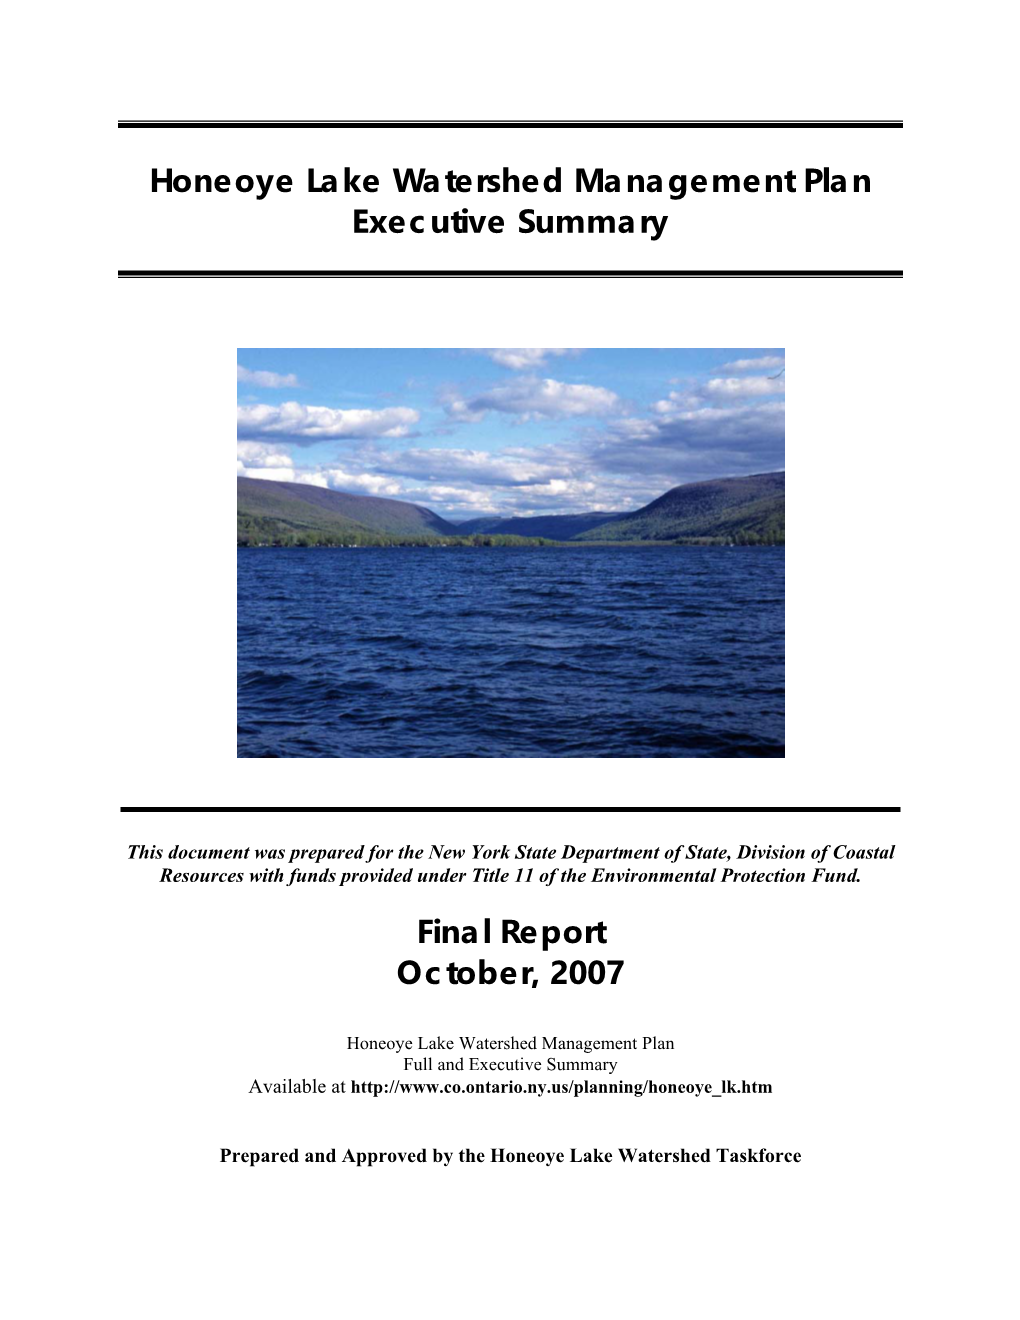 Honeoye Lake Watershed Management Plan Executive Summary